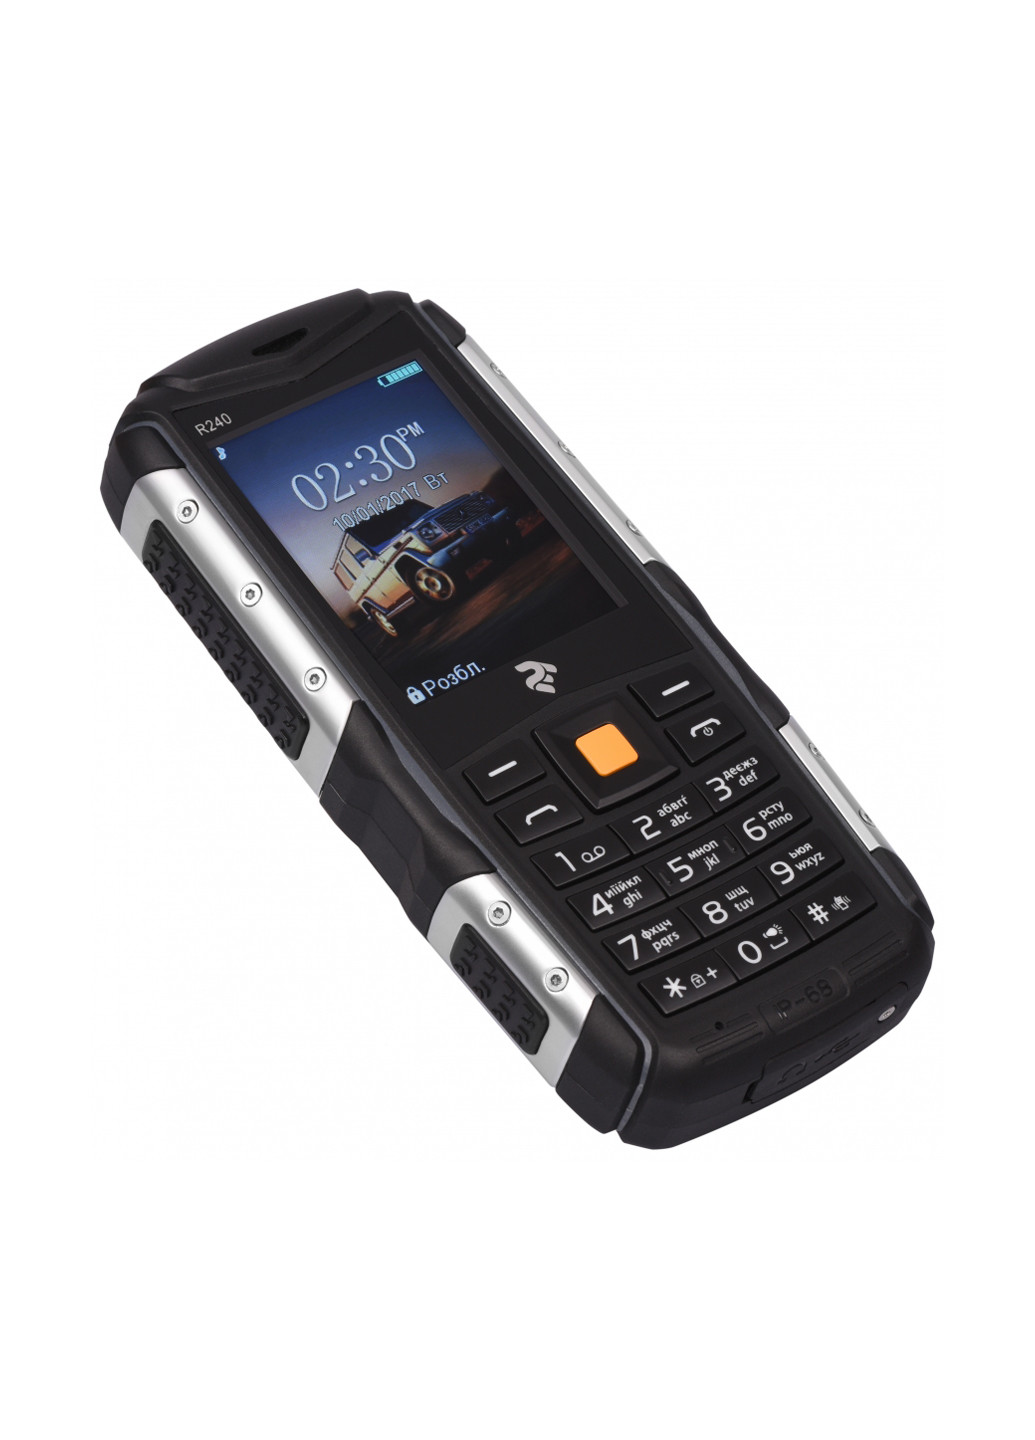 Мобильный телефон (708744071057) 2E 2E R240 Dual Sim Black чёрный